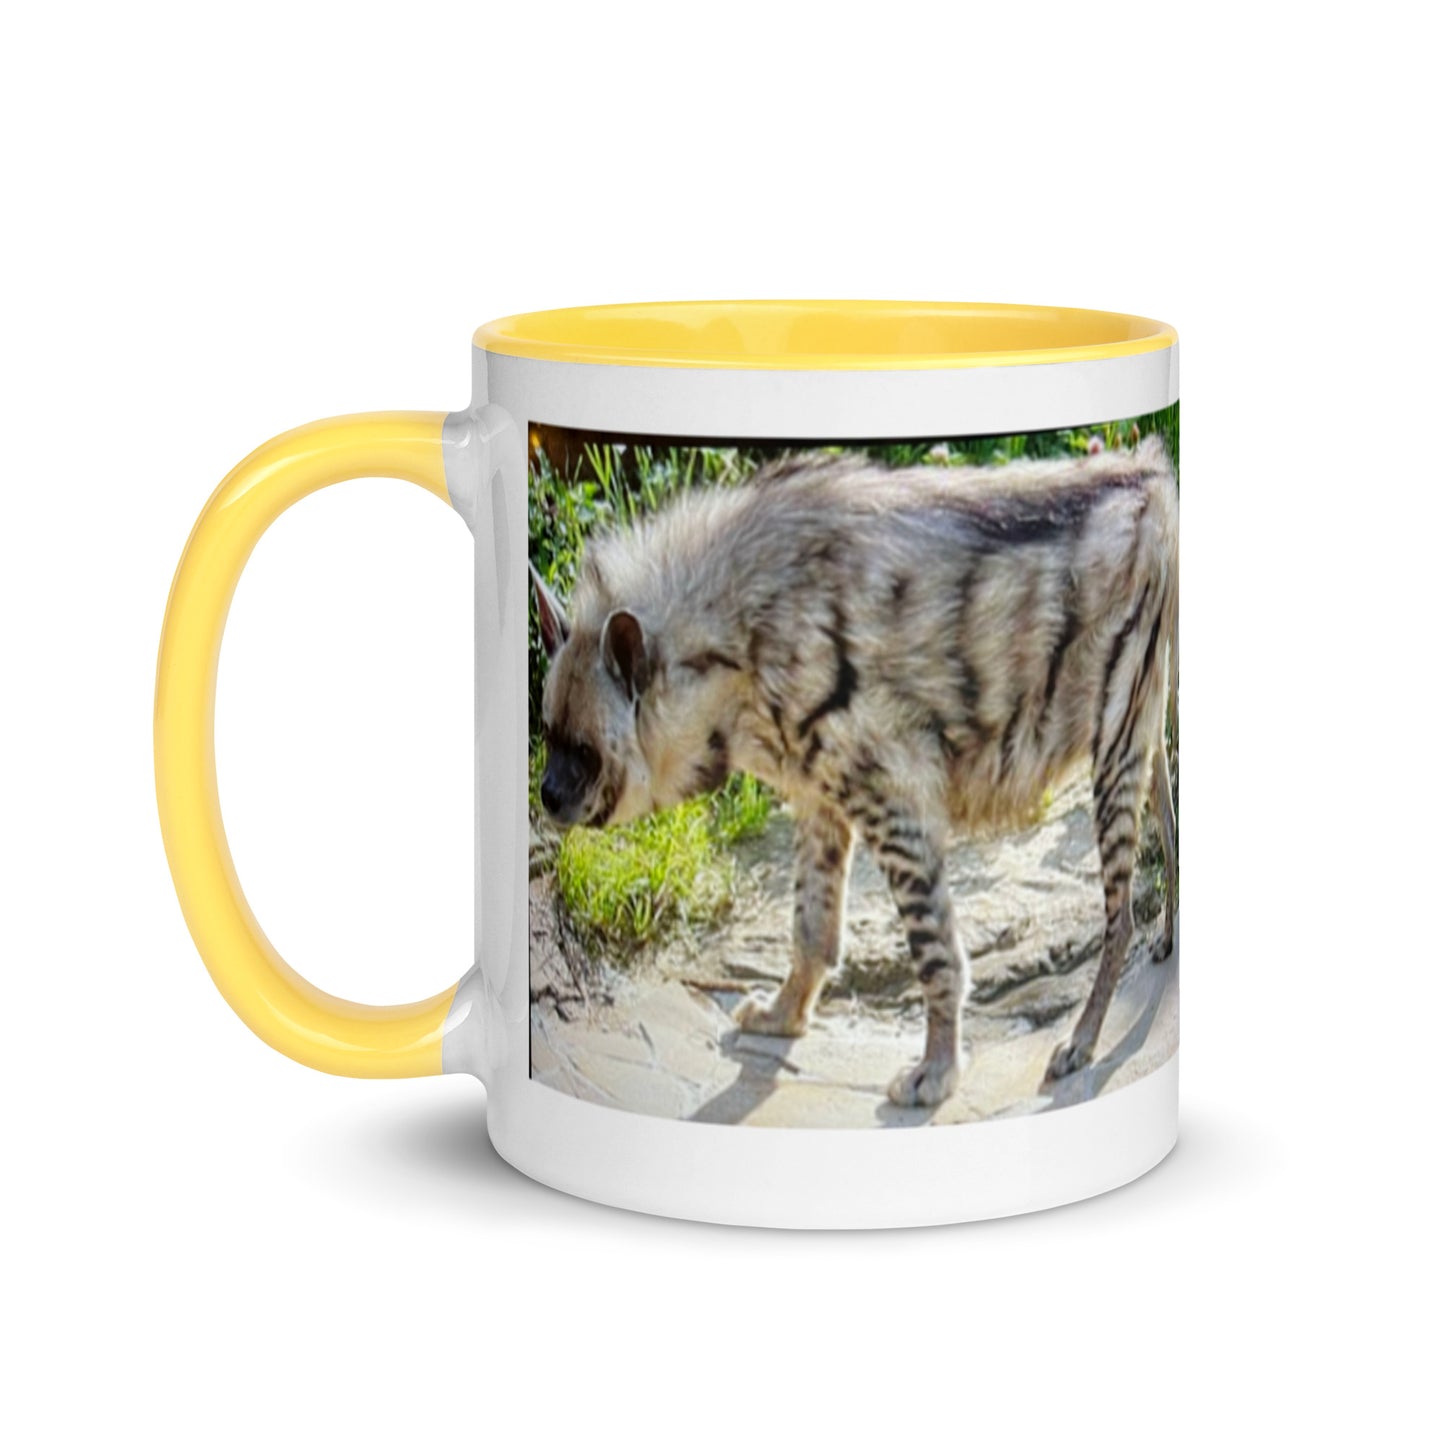 2 Kenya Critters Mug with Color Inside